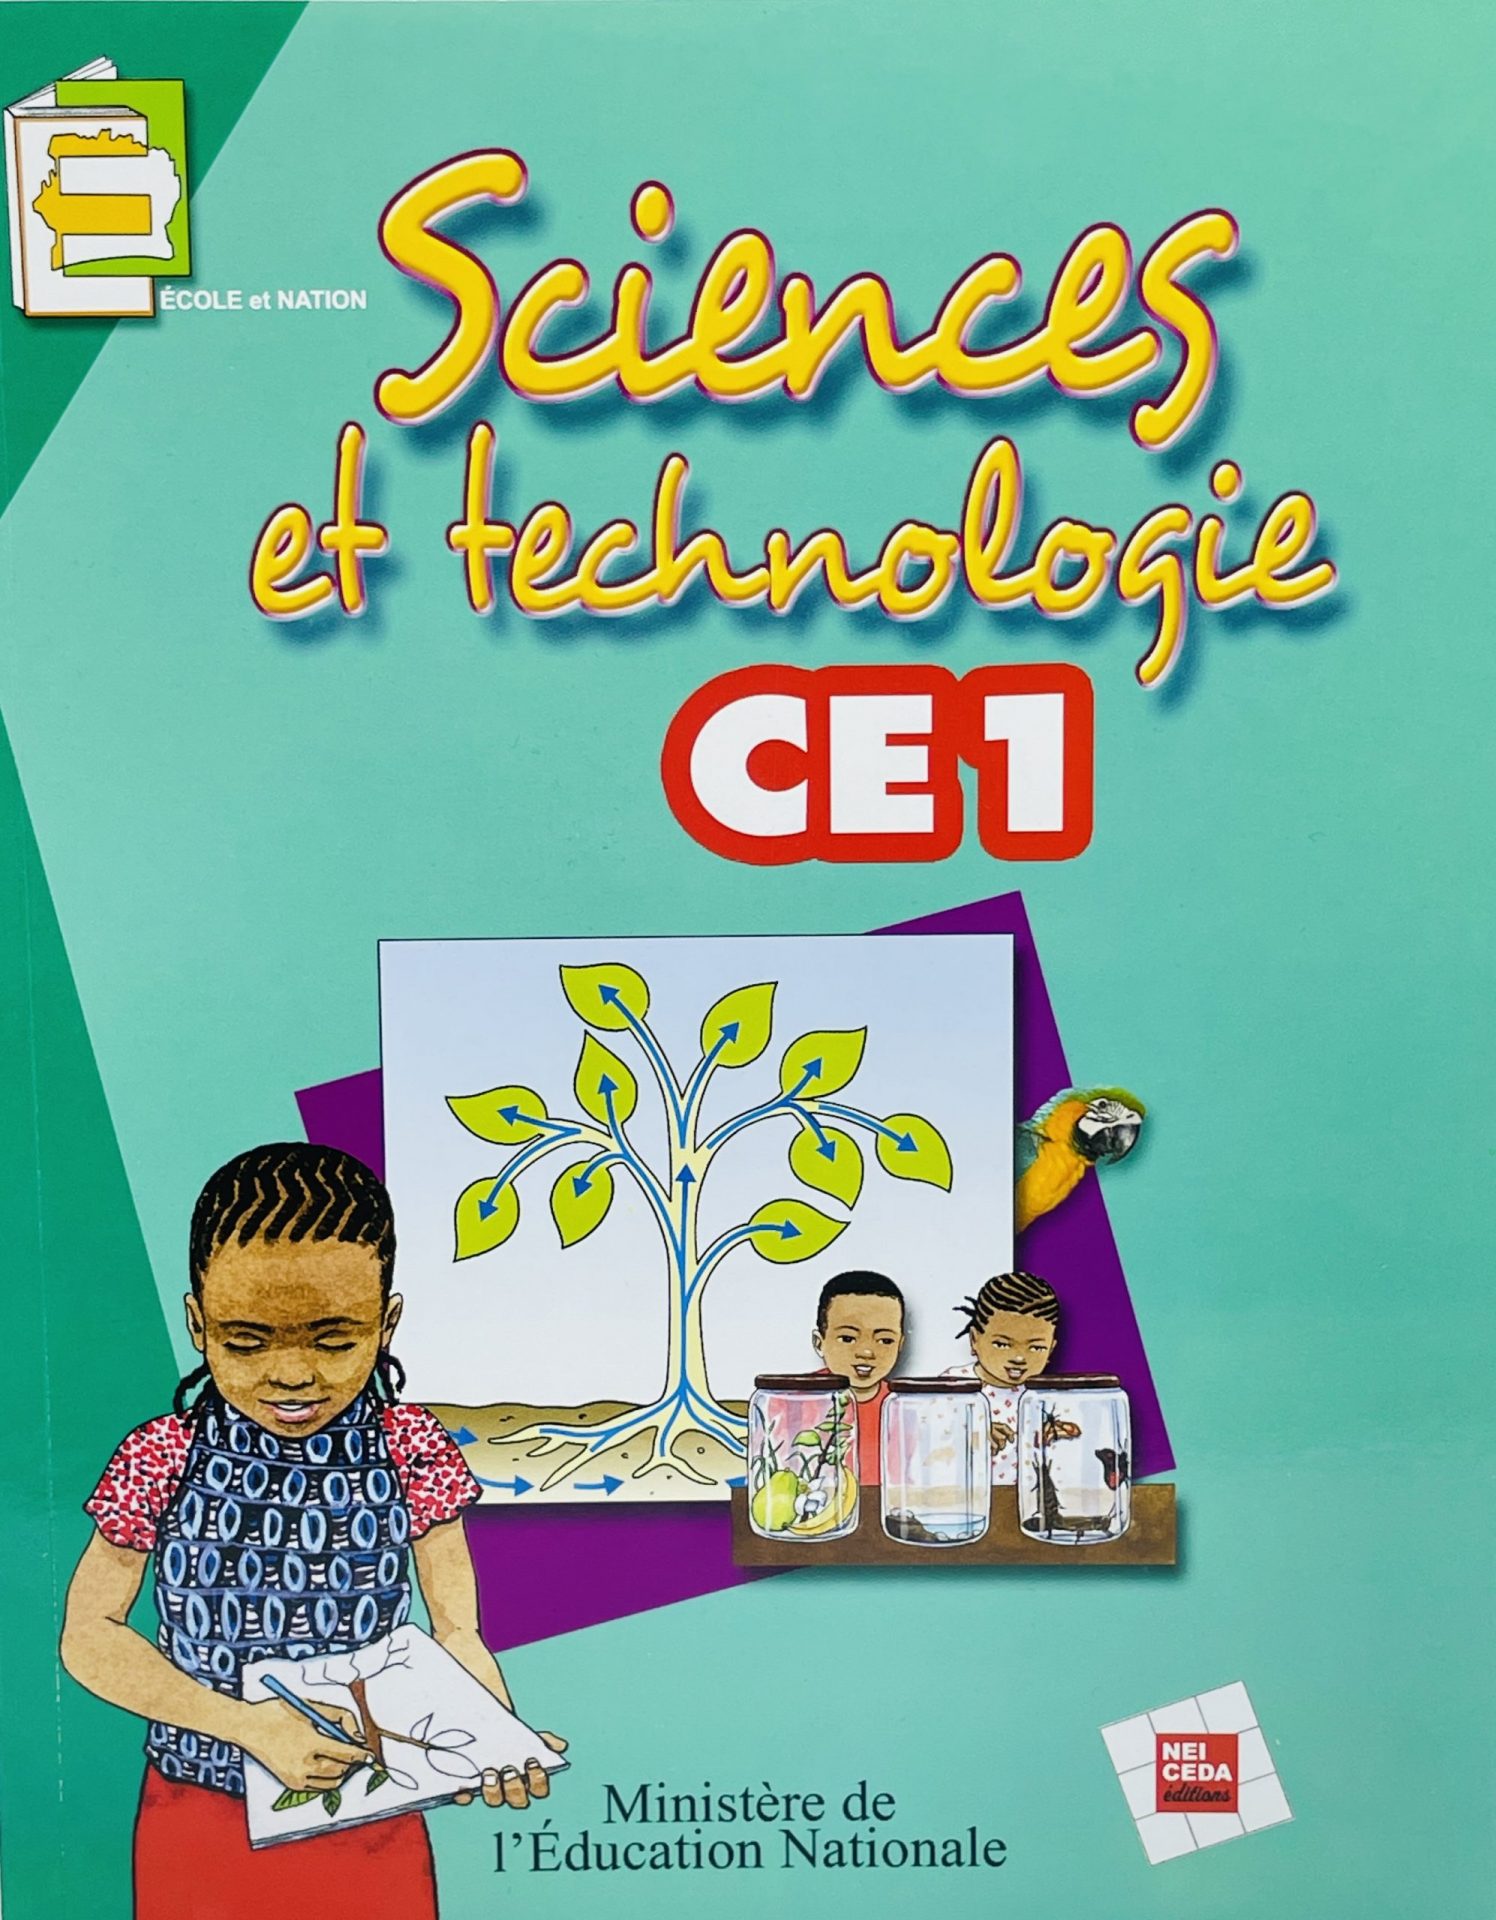 Sciences et Technologies CE1 - Ecole et Nation